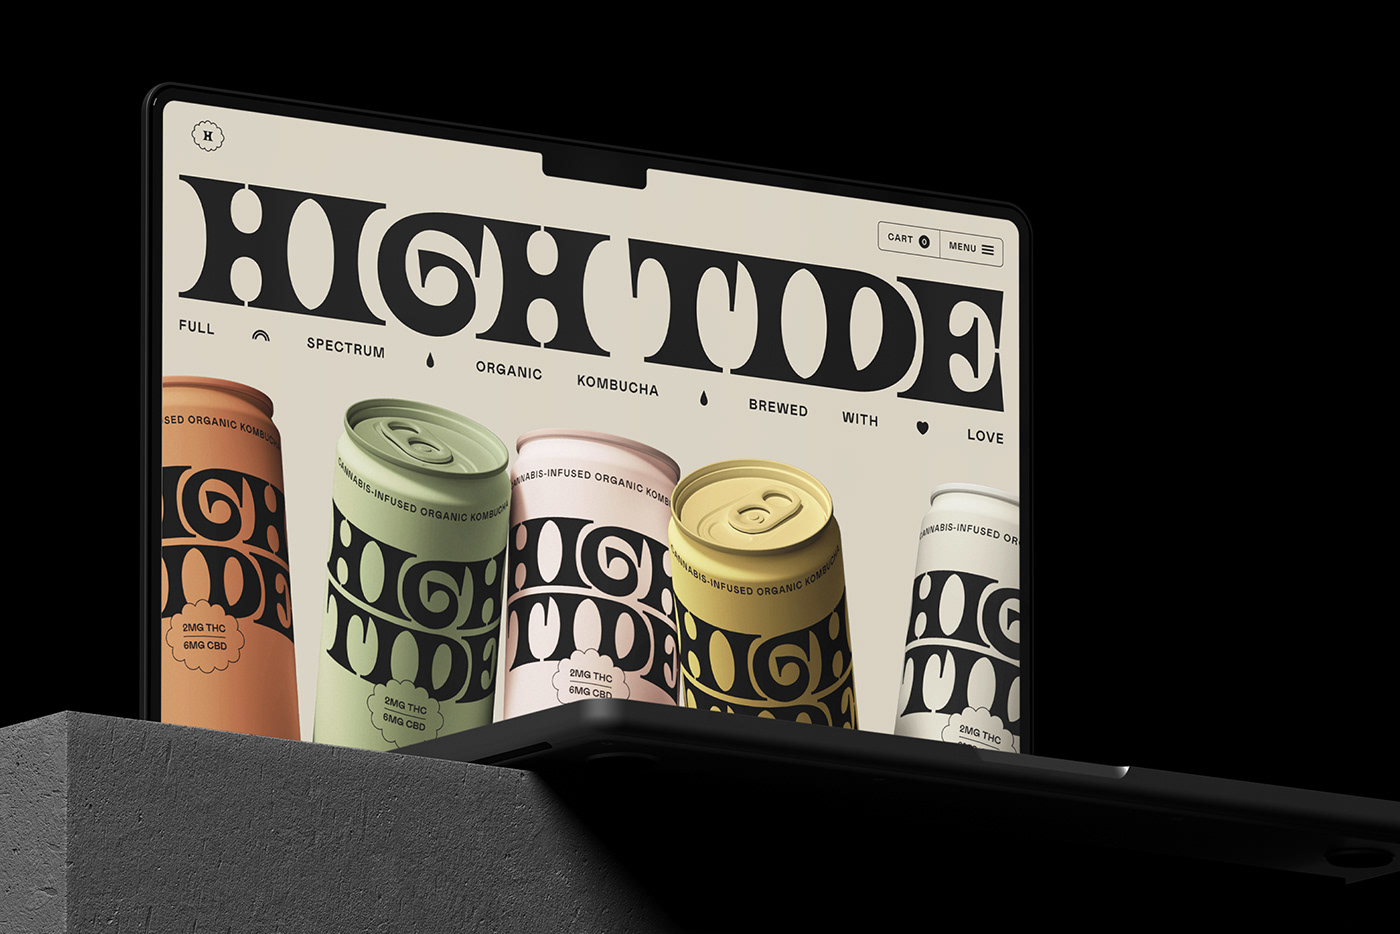 欣赏复古风格的High Tide饮料品牌设计,复古风格饮料包装设计。